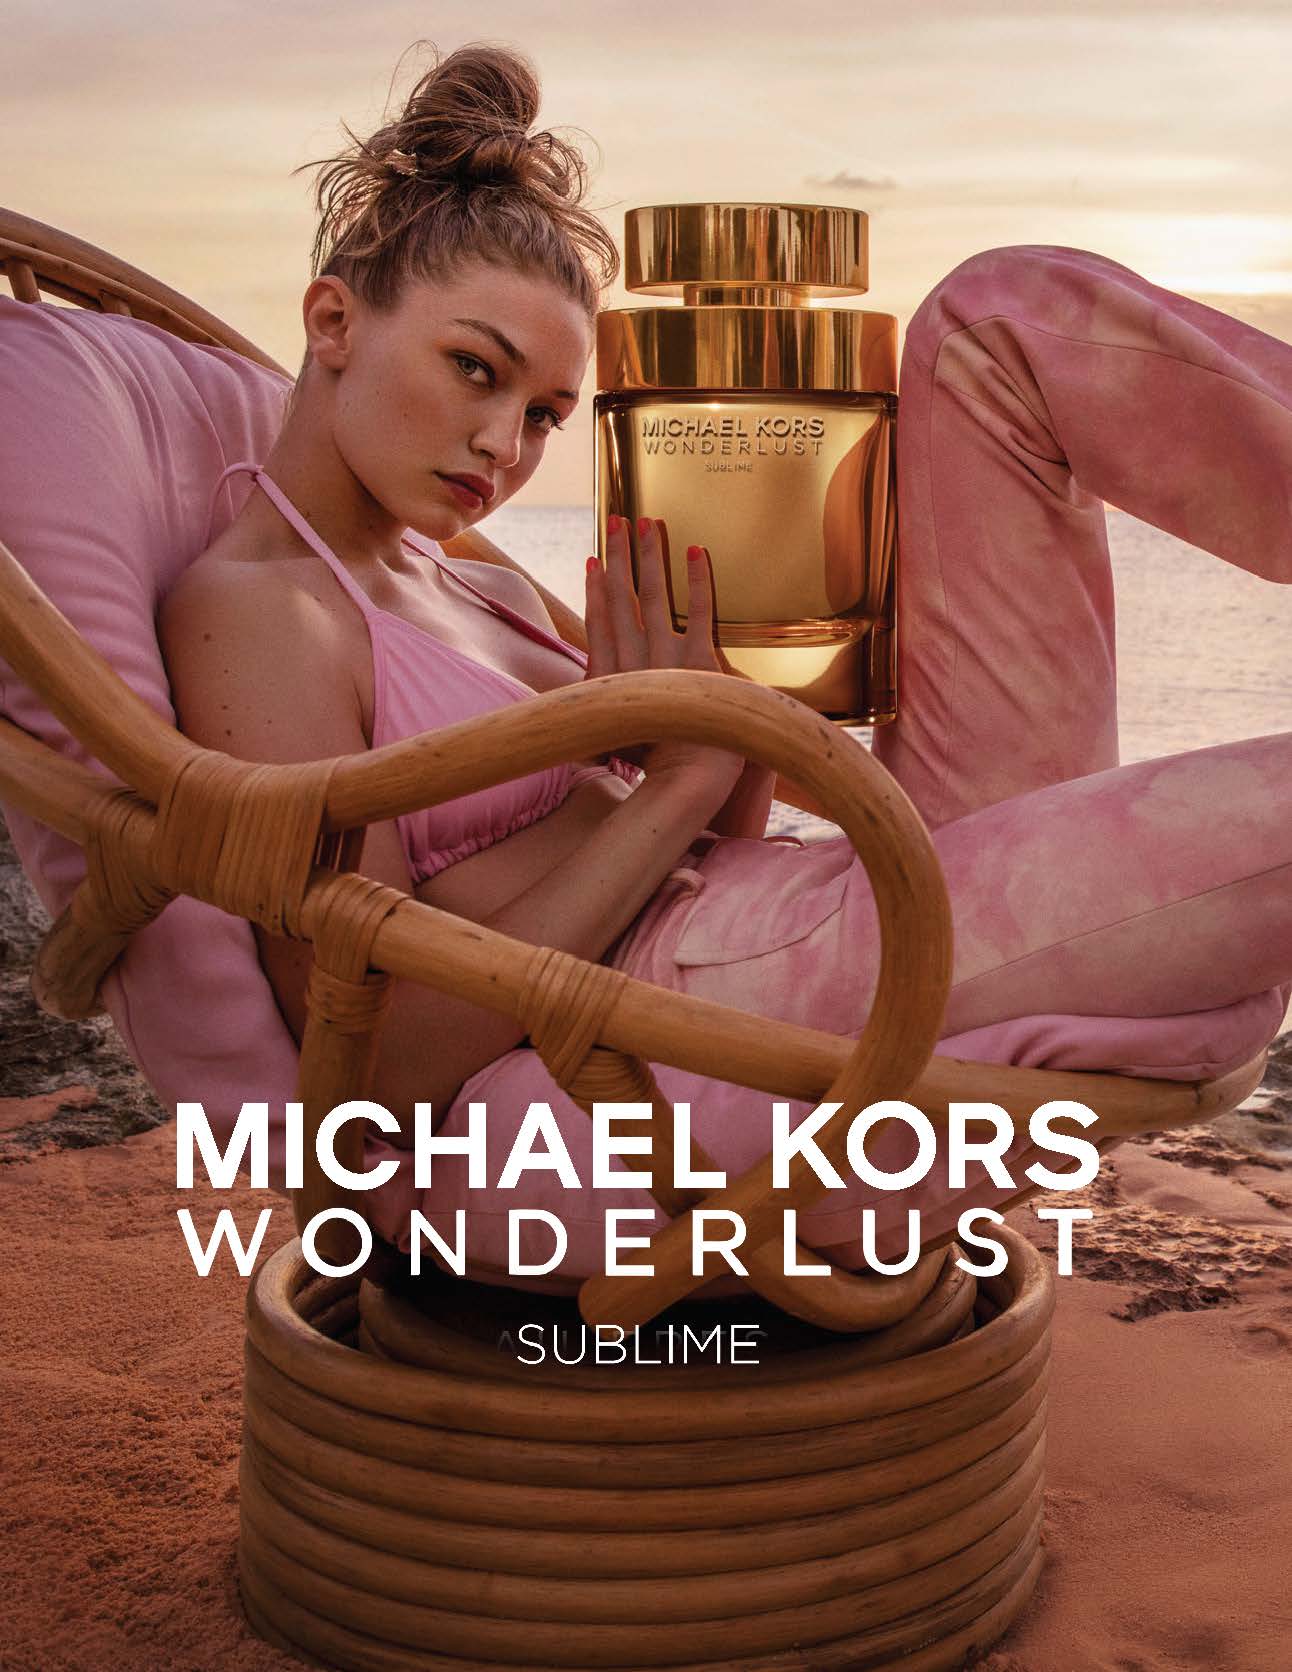 Michael Kors Wonderlust Sublime Campaign